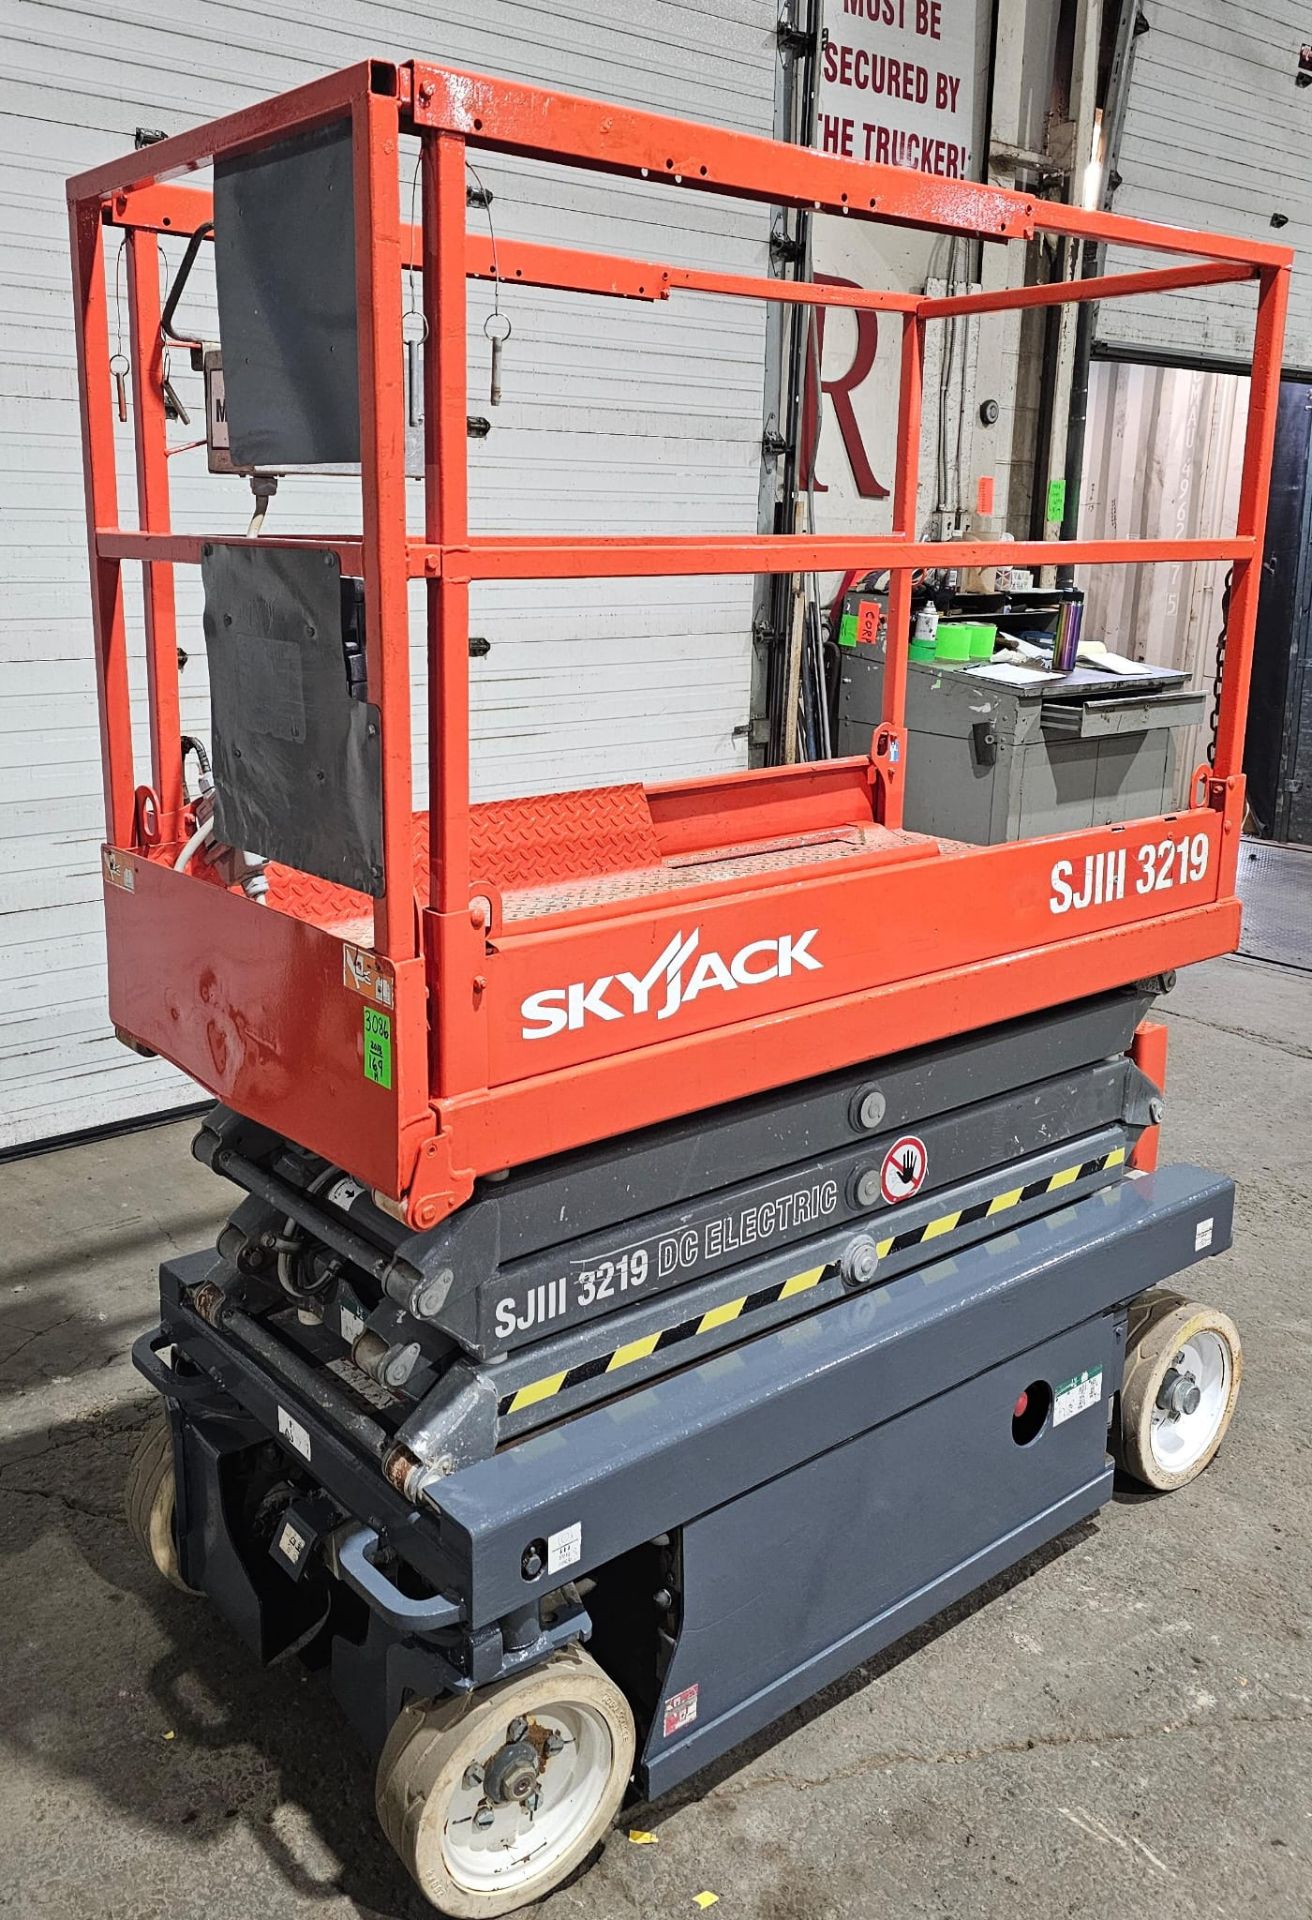 2013 Skyjack SJIII model 3219 - 550lbs Capacity Forklift Motorized Scissor Lift 24V 19ft lift height - Image 11 of 18